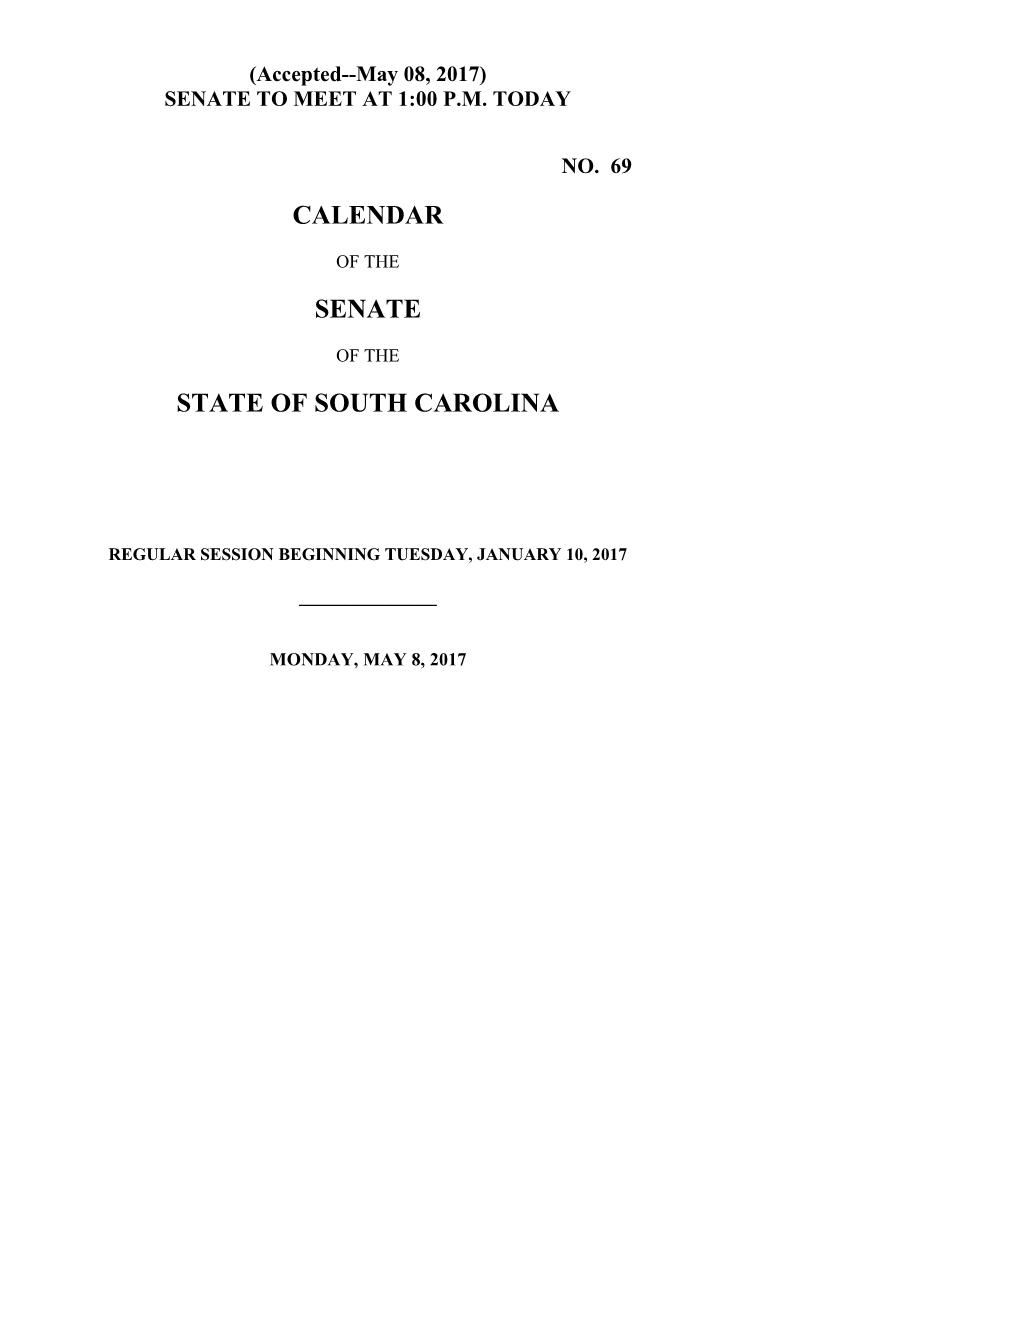 Senate Calendar for 5/8/2017 - South Carolina Legislature Online